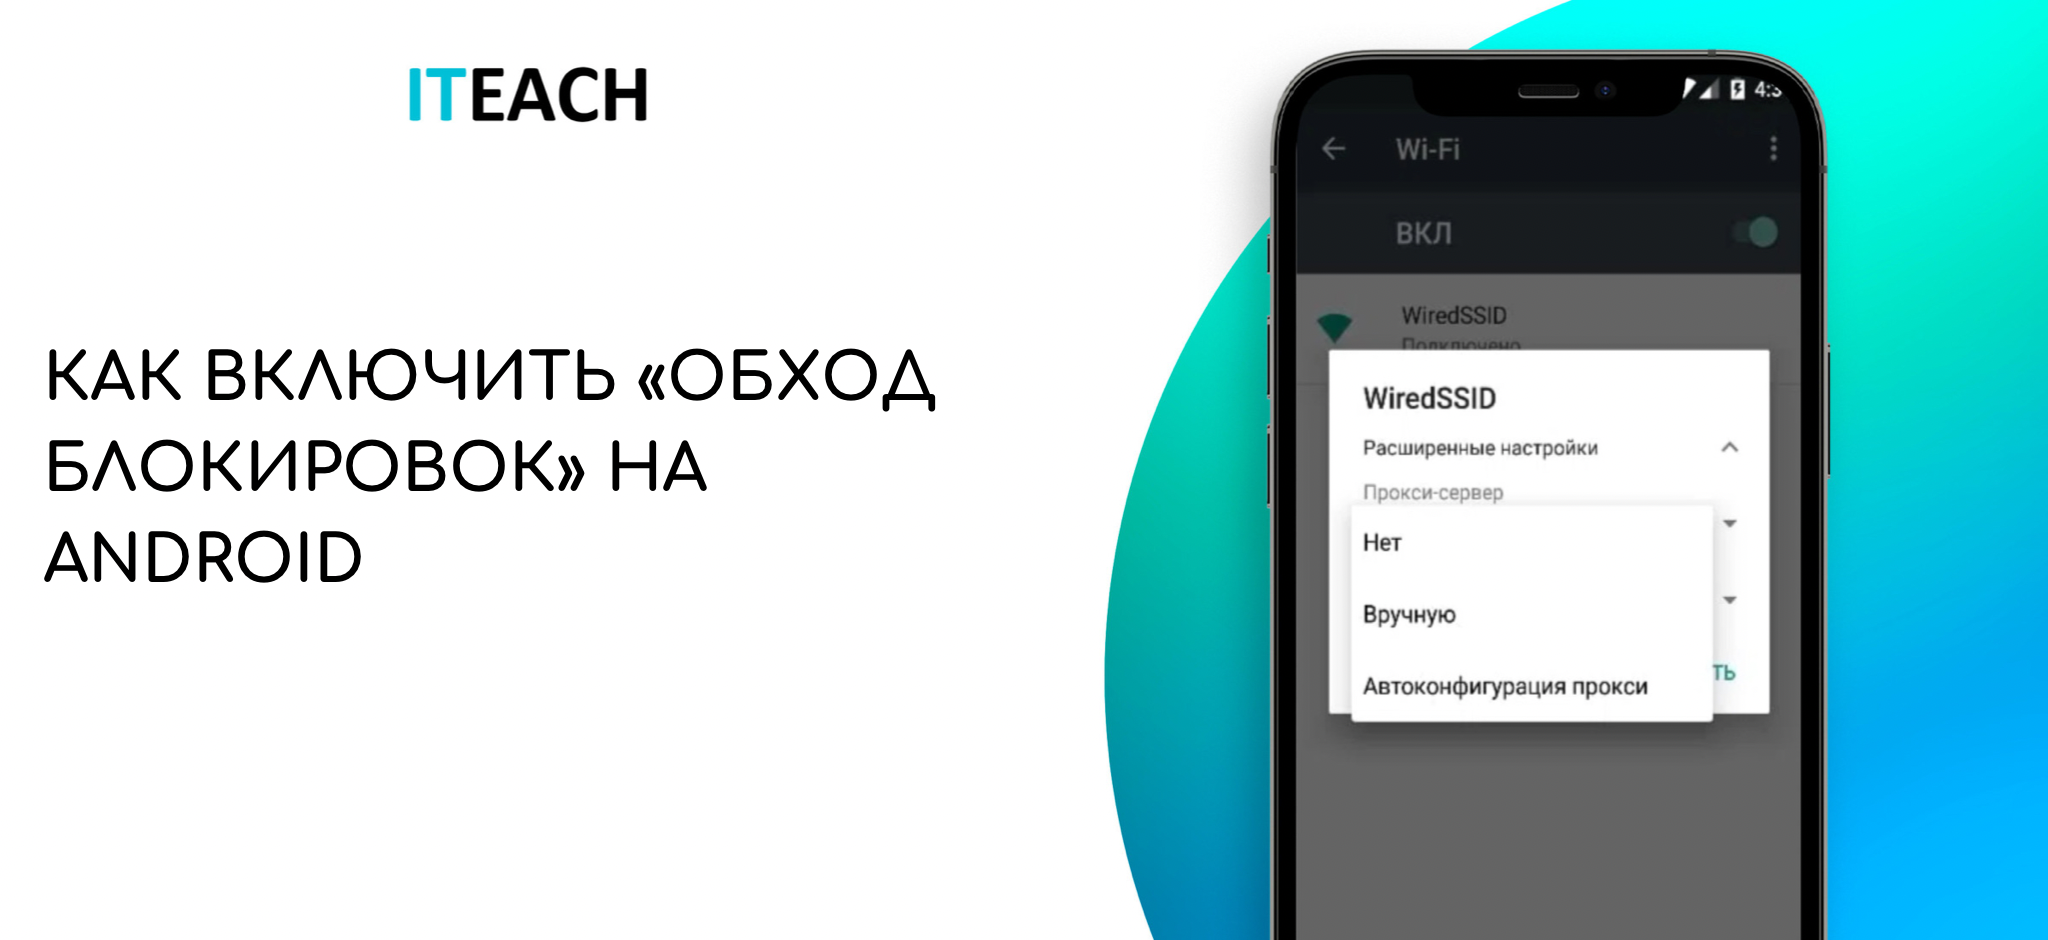 Как обойти блокировку телеграмма на андроид в казахстане фото 5